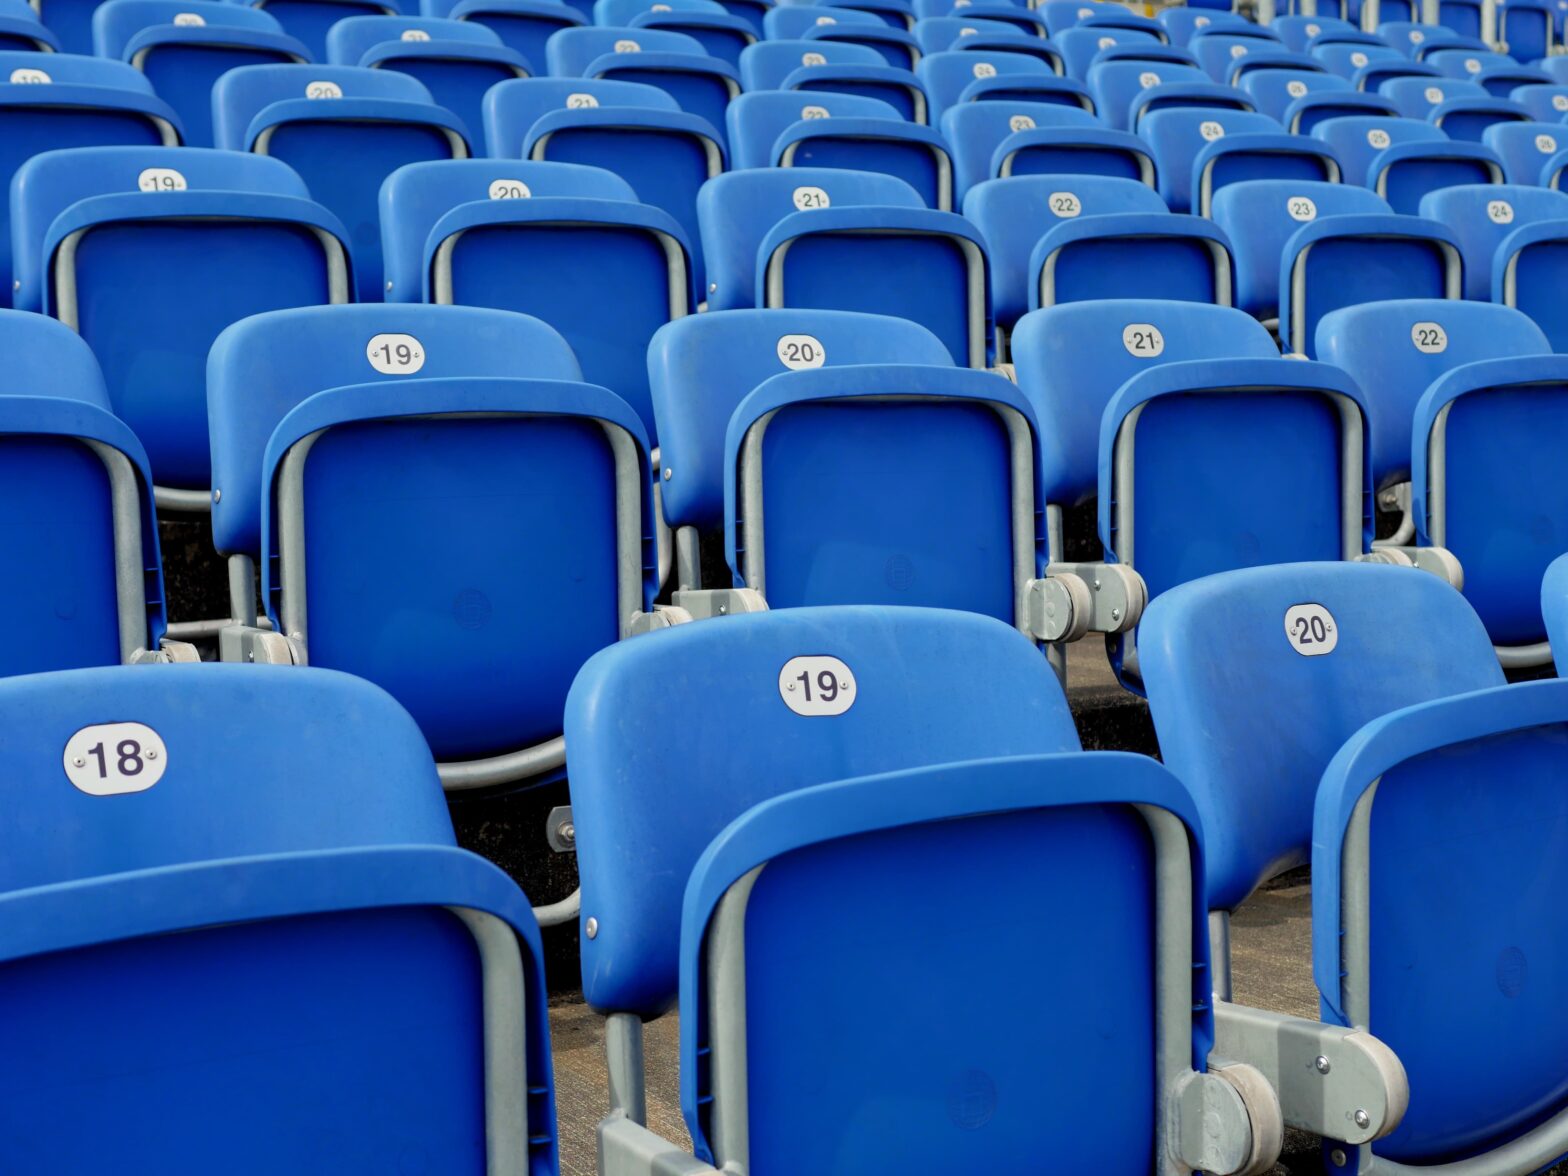 Voetbalstadion stoelen